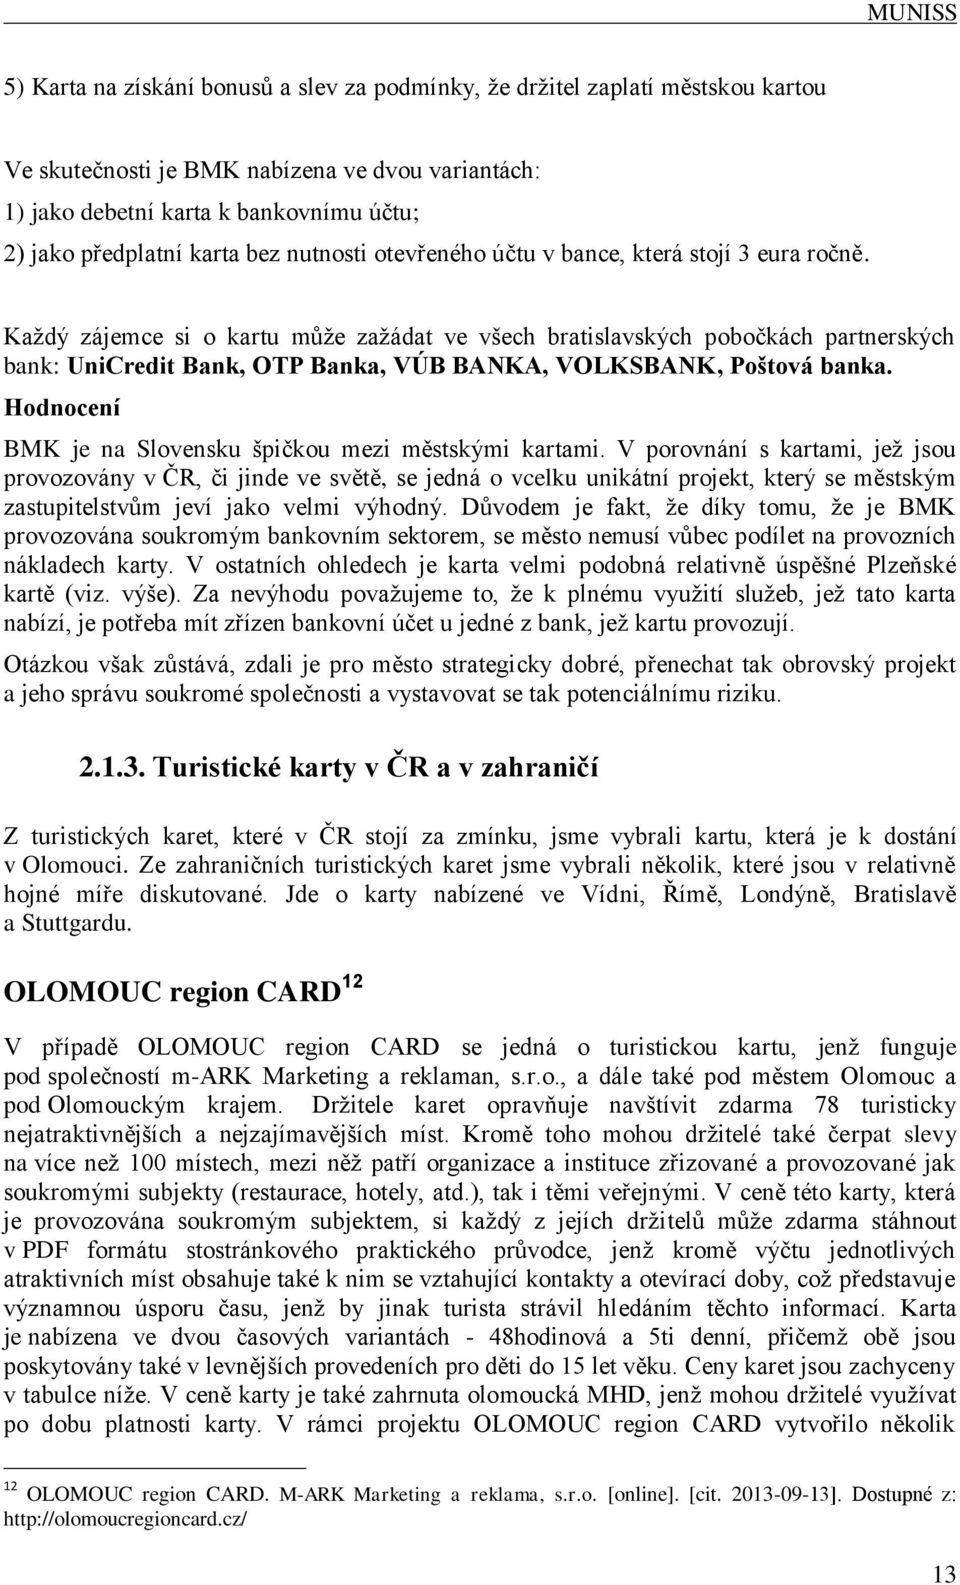 Každý zájemce si o kartu může zažádat ve všech bratislavských pobočkách partnerských bank: UniCredit Bank, OTP Banka, VÚB BANKA, VOLKSBANK, Poštová banka.